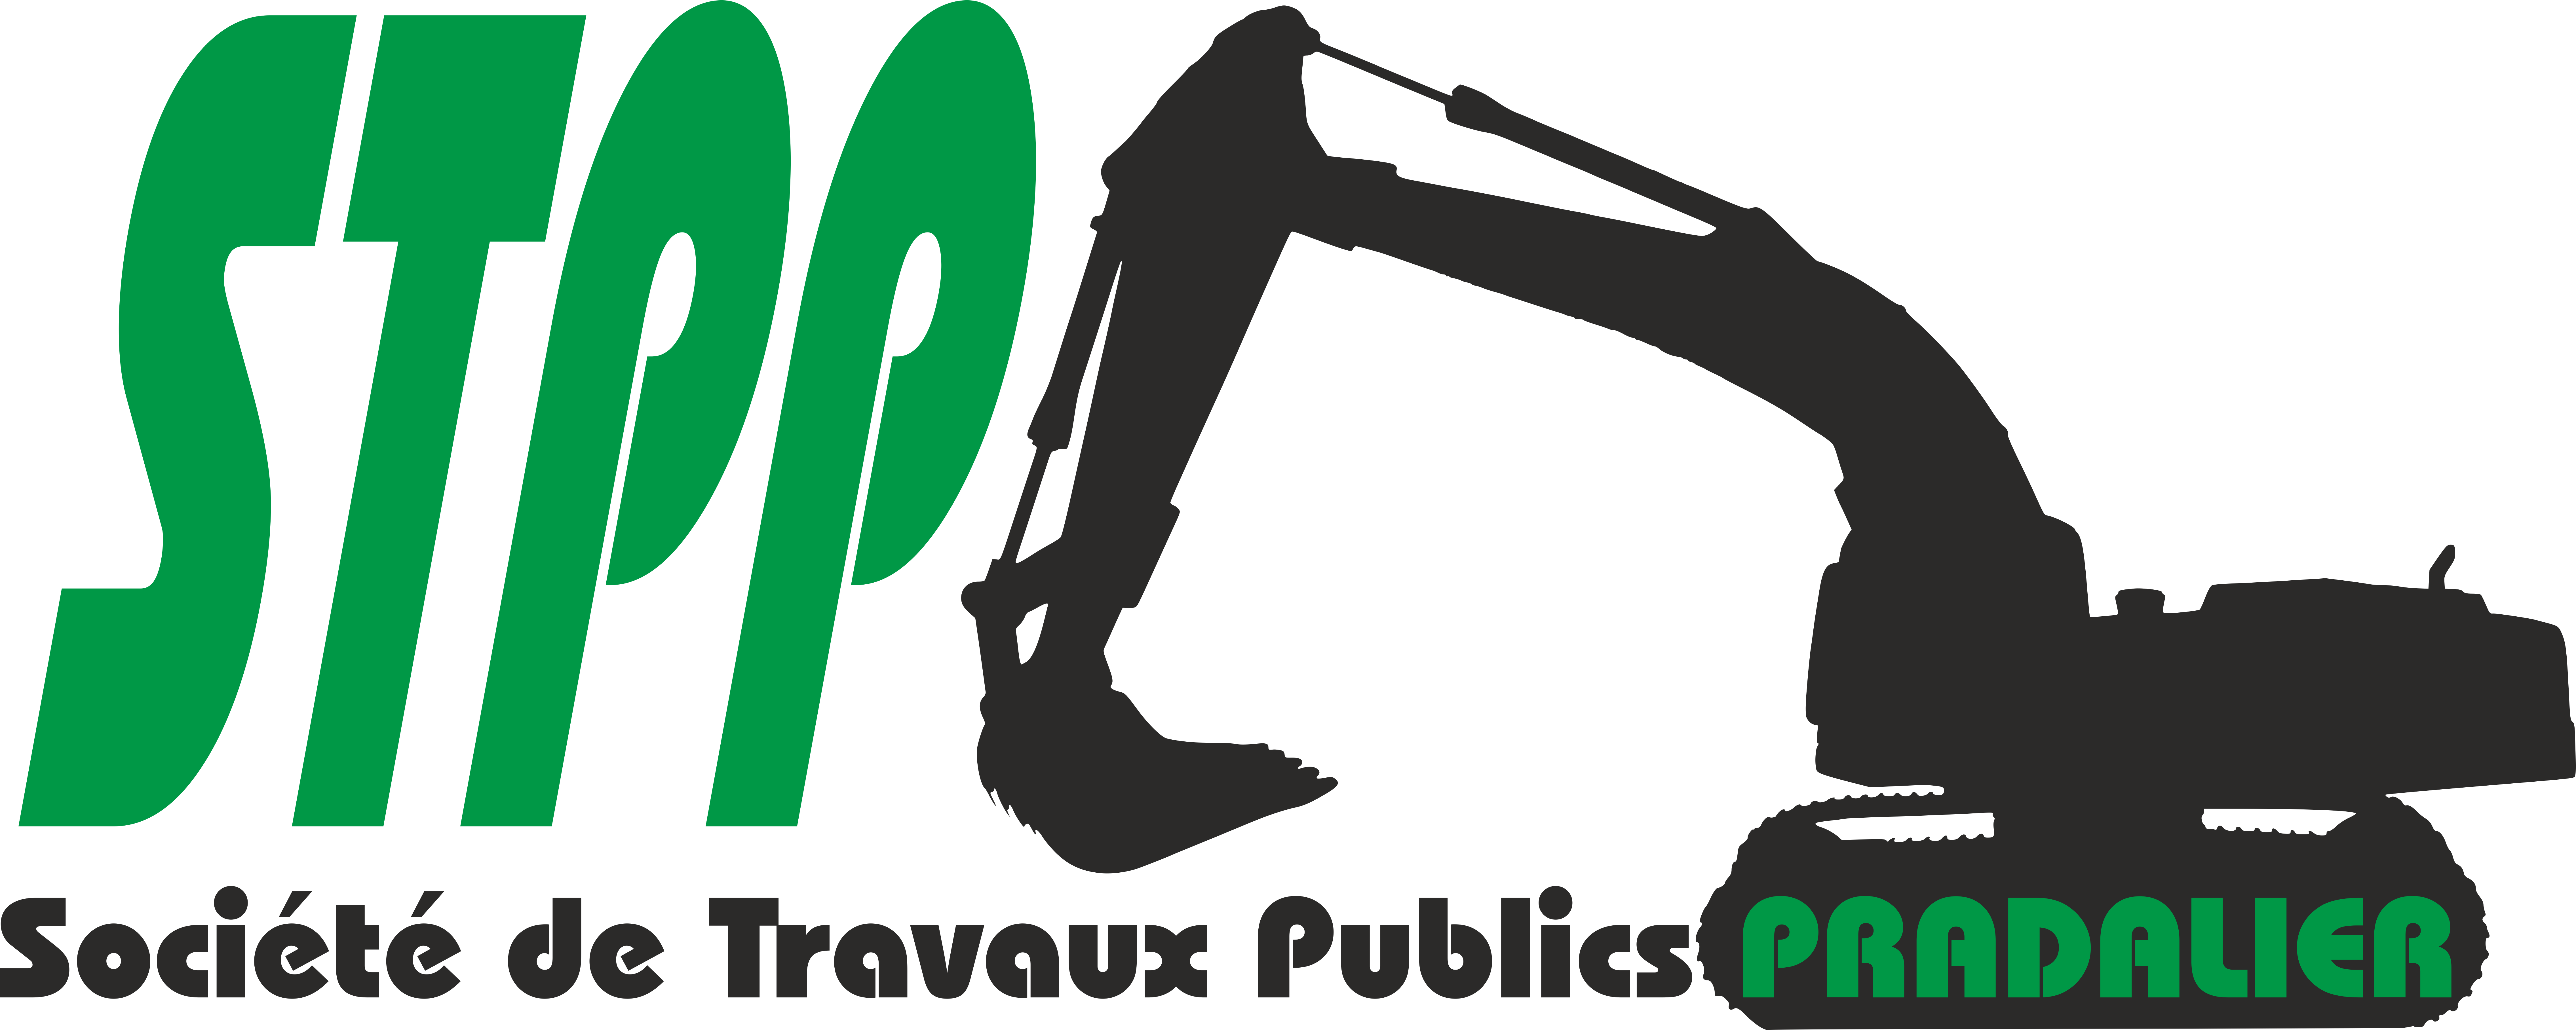 Logo STPP